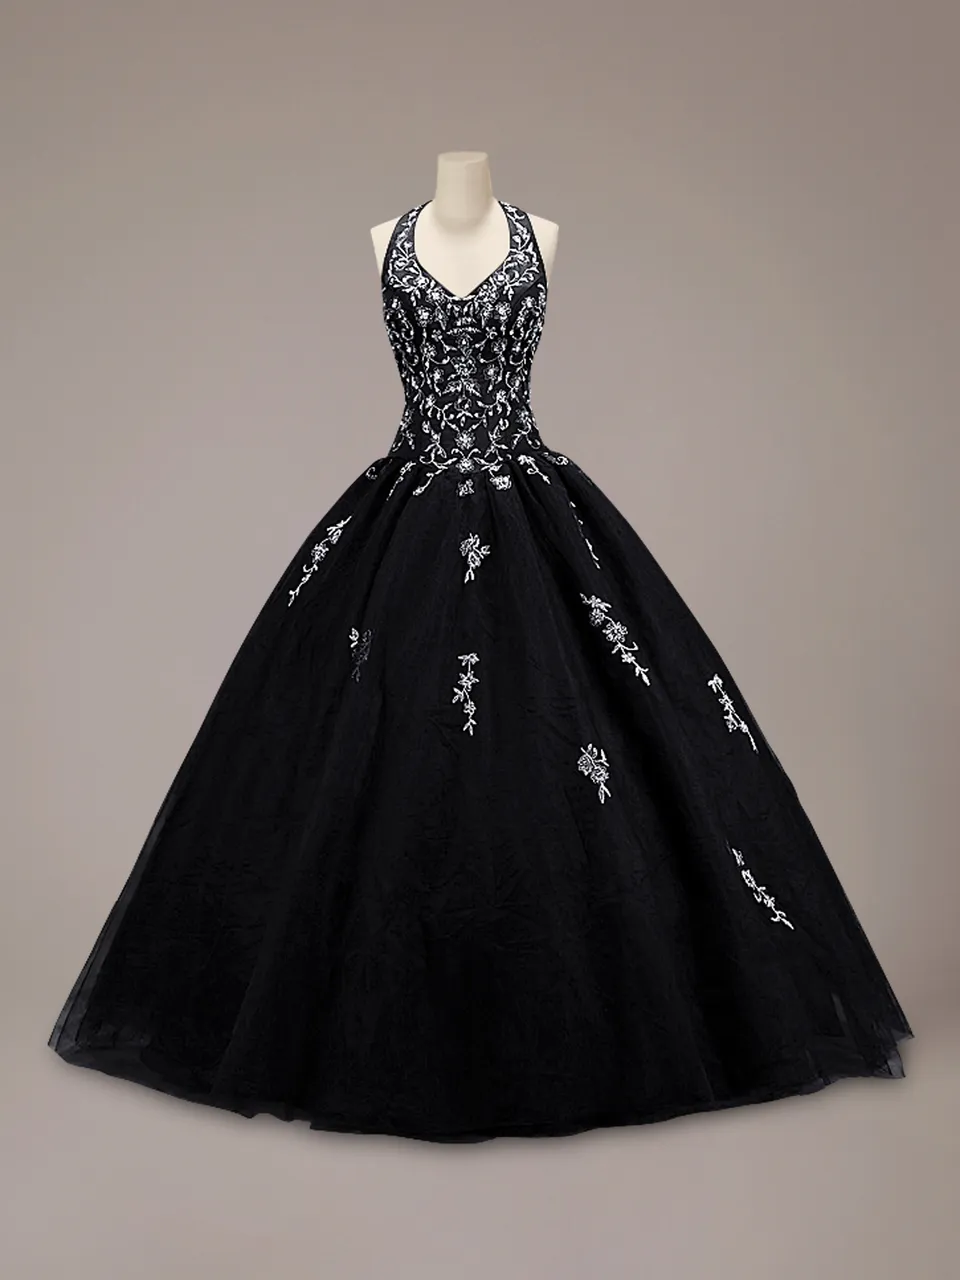 Vintage buntes schwarzes Ballkleid Gothic Hochzeitskleid Neckholder Tüllrock Silber Stickerei bodenlang nicht weiß Brautkleider Couture